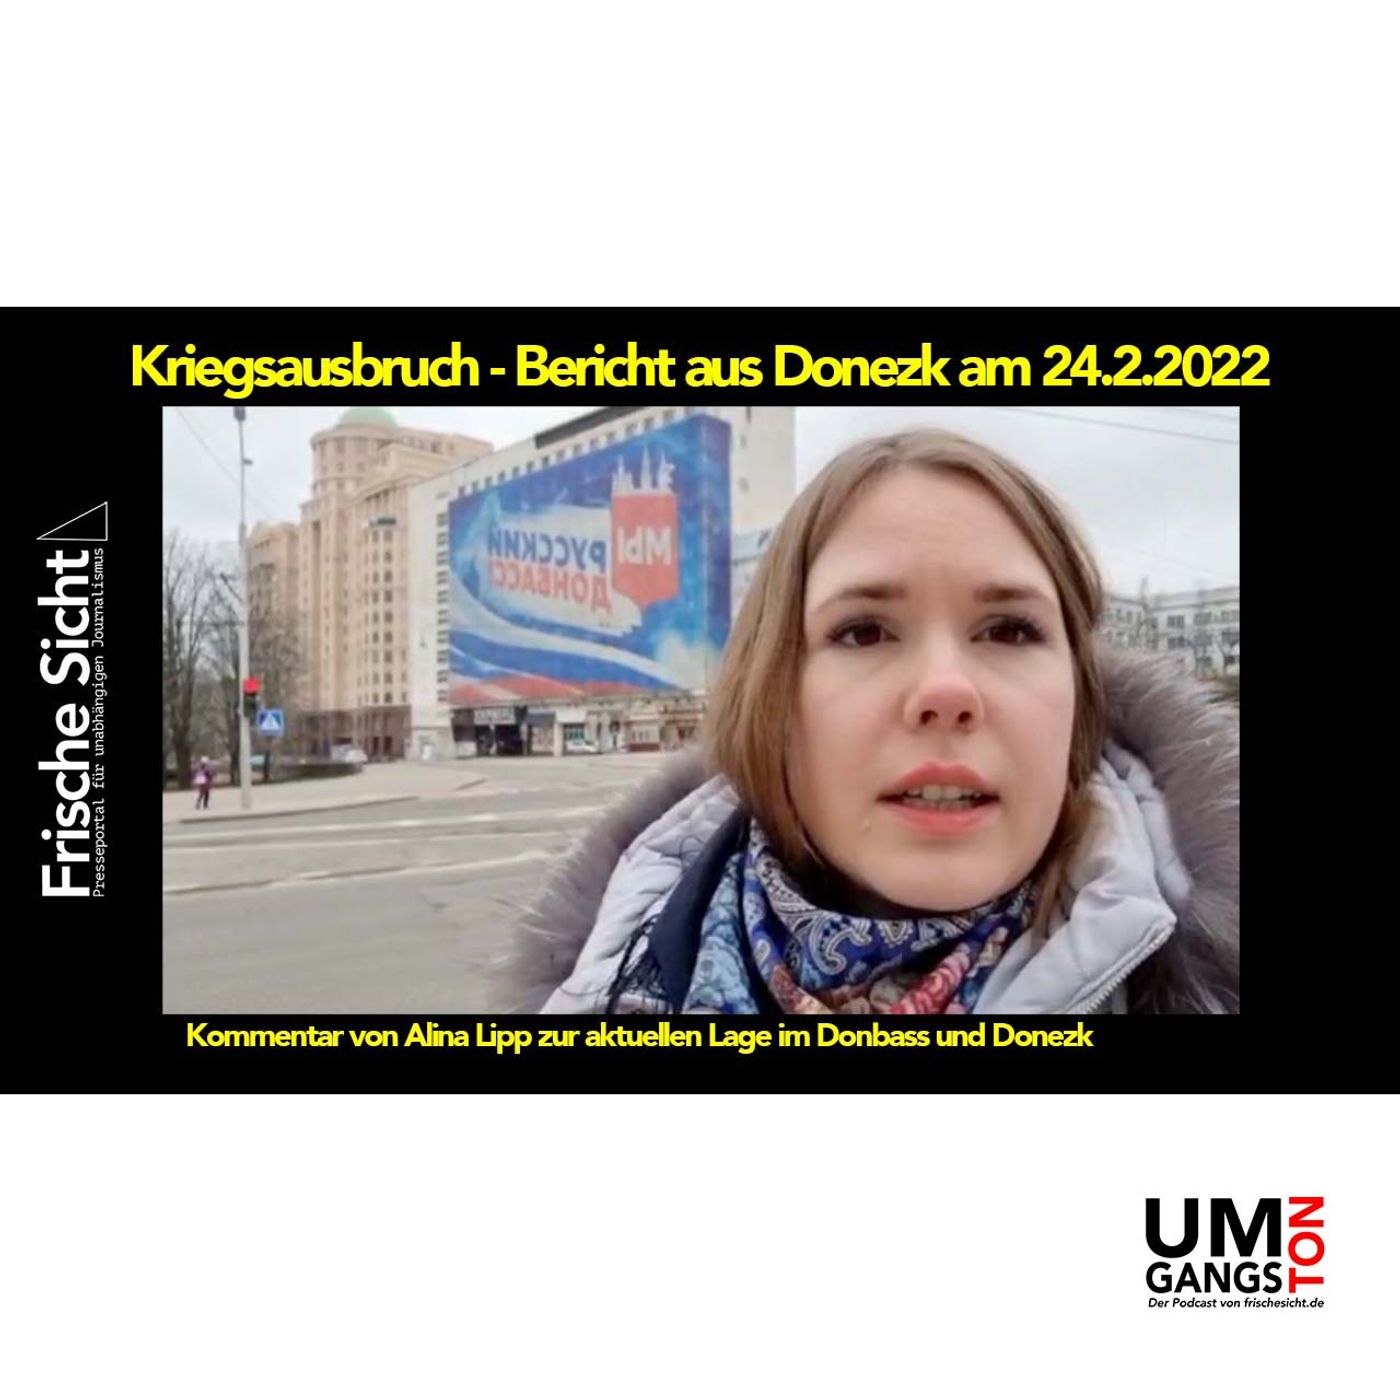 Kriegsausbruch – Bericht aus Donezk am 24.2.2022